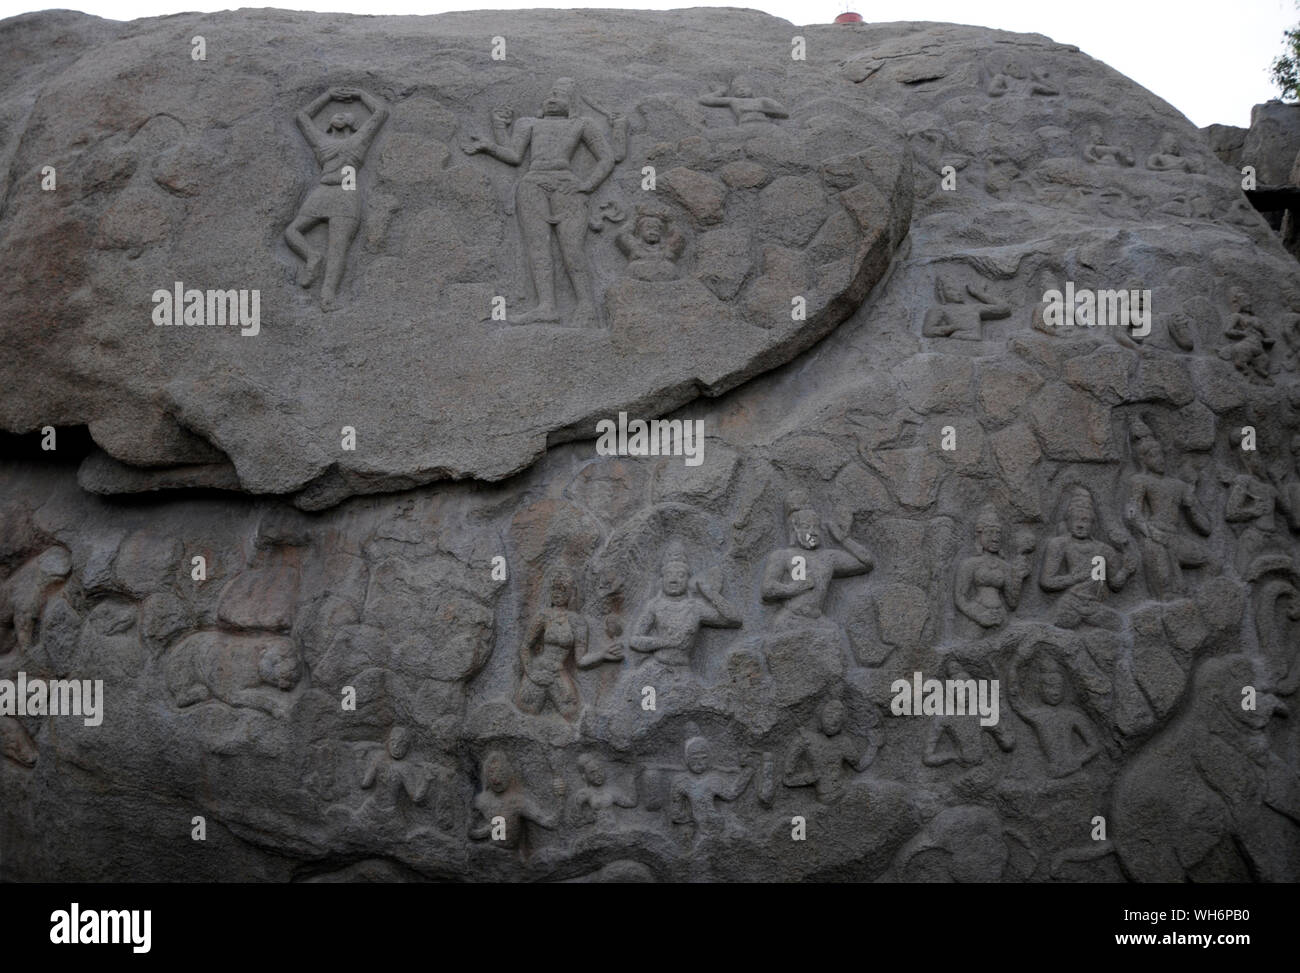 Panel esculpido sobre una roca en Mahabalipuram, Tamil Nadu, India representando historias de la mitología hindú. Fotografía: Sondeep Shankar Foto de stock